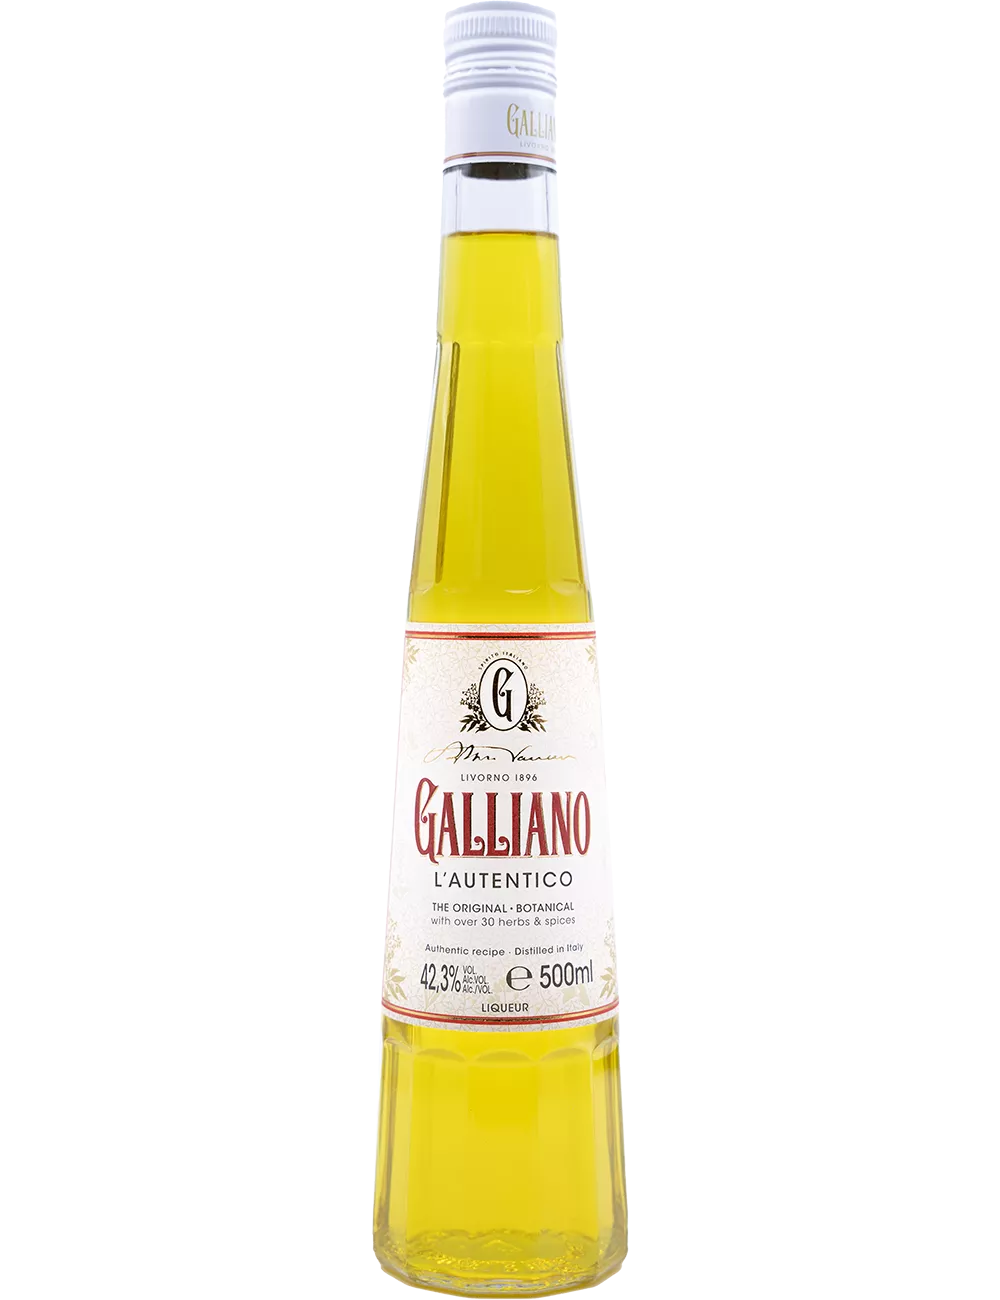 L'Autentico Galliano - Liqueur